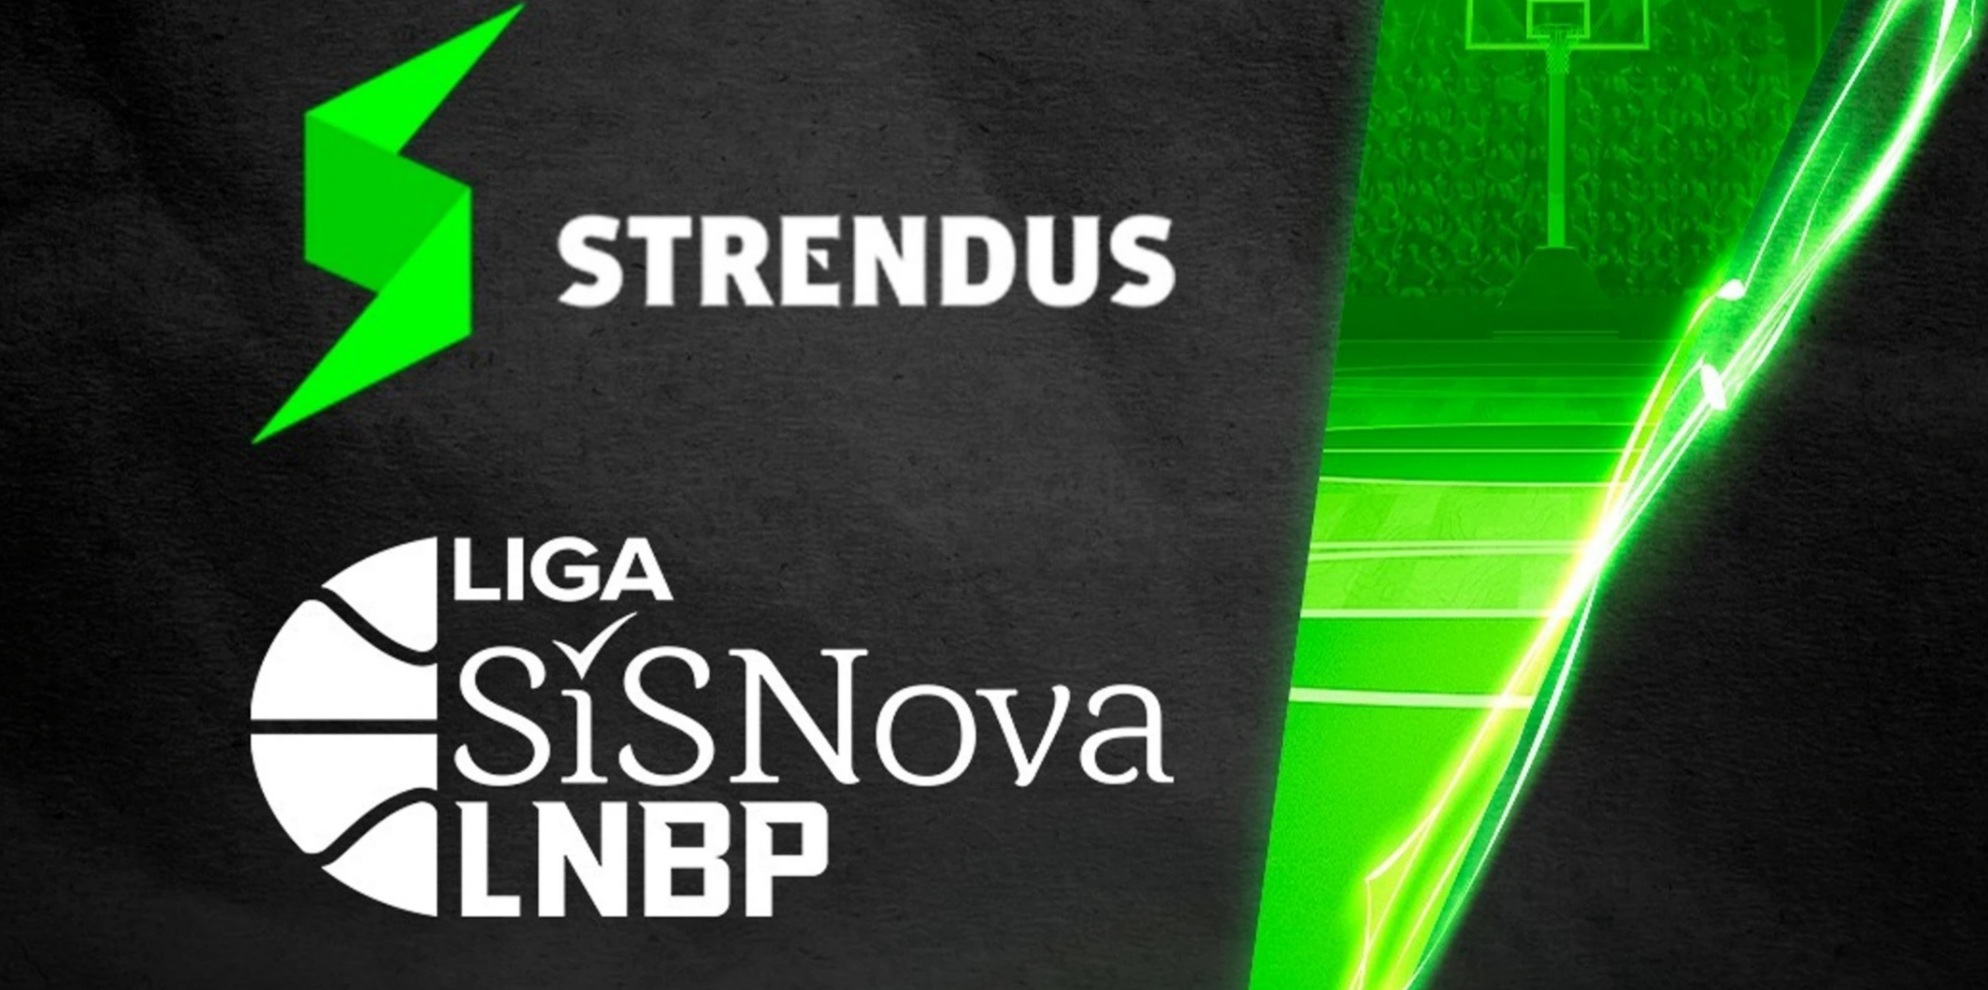 Strendus apuesta por el básquetbol y se convierte en patrocinador de la LNBP